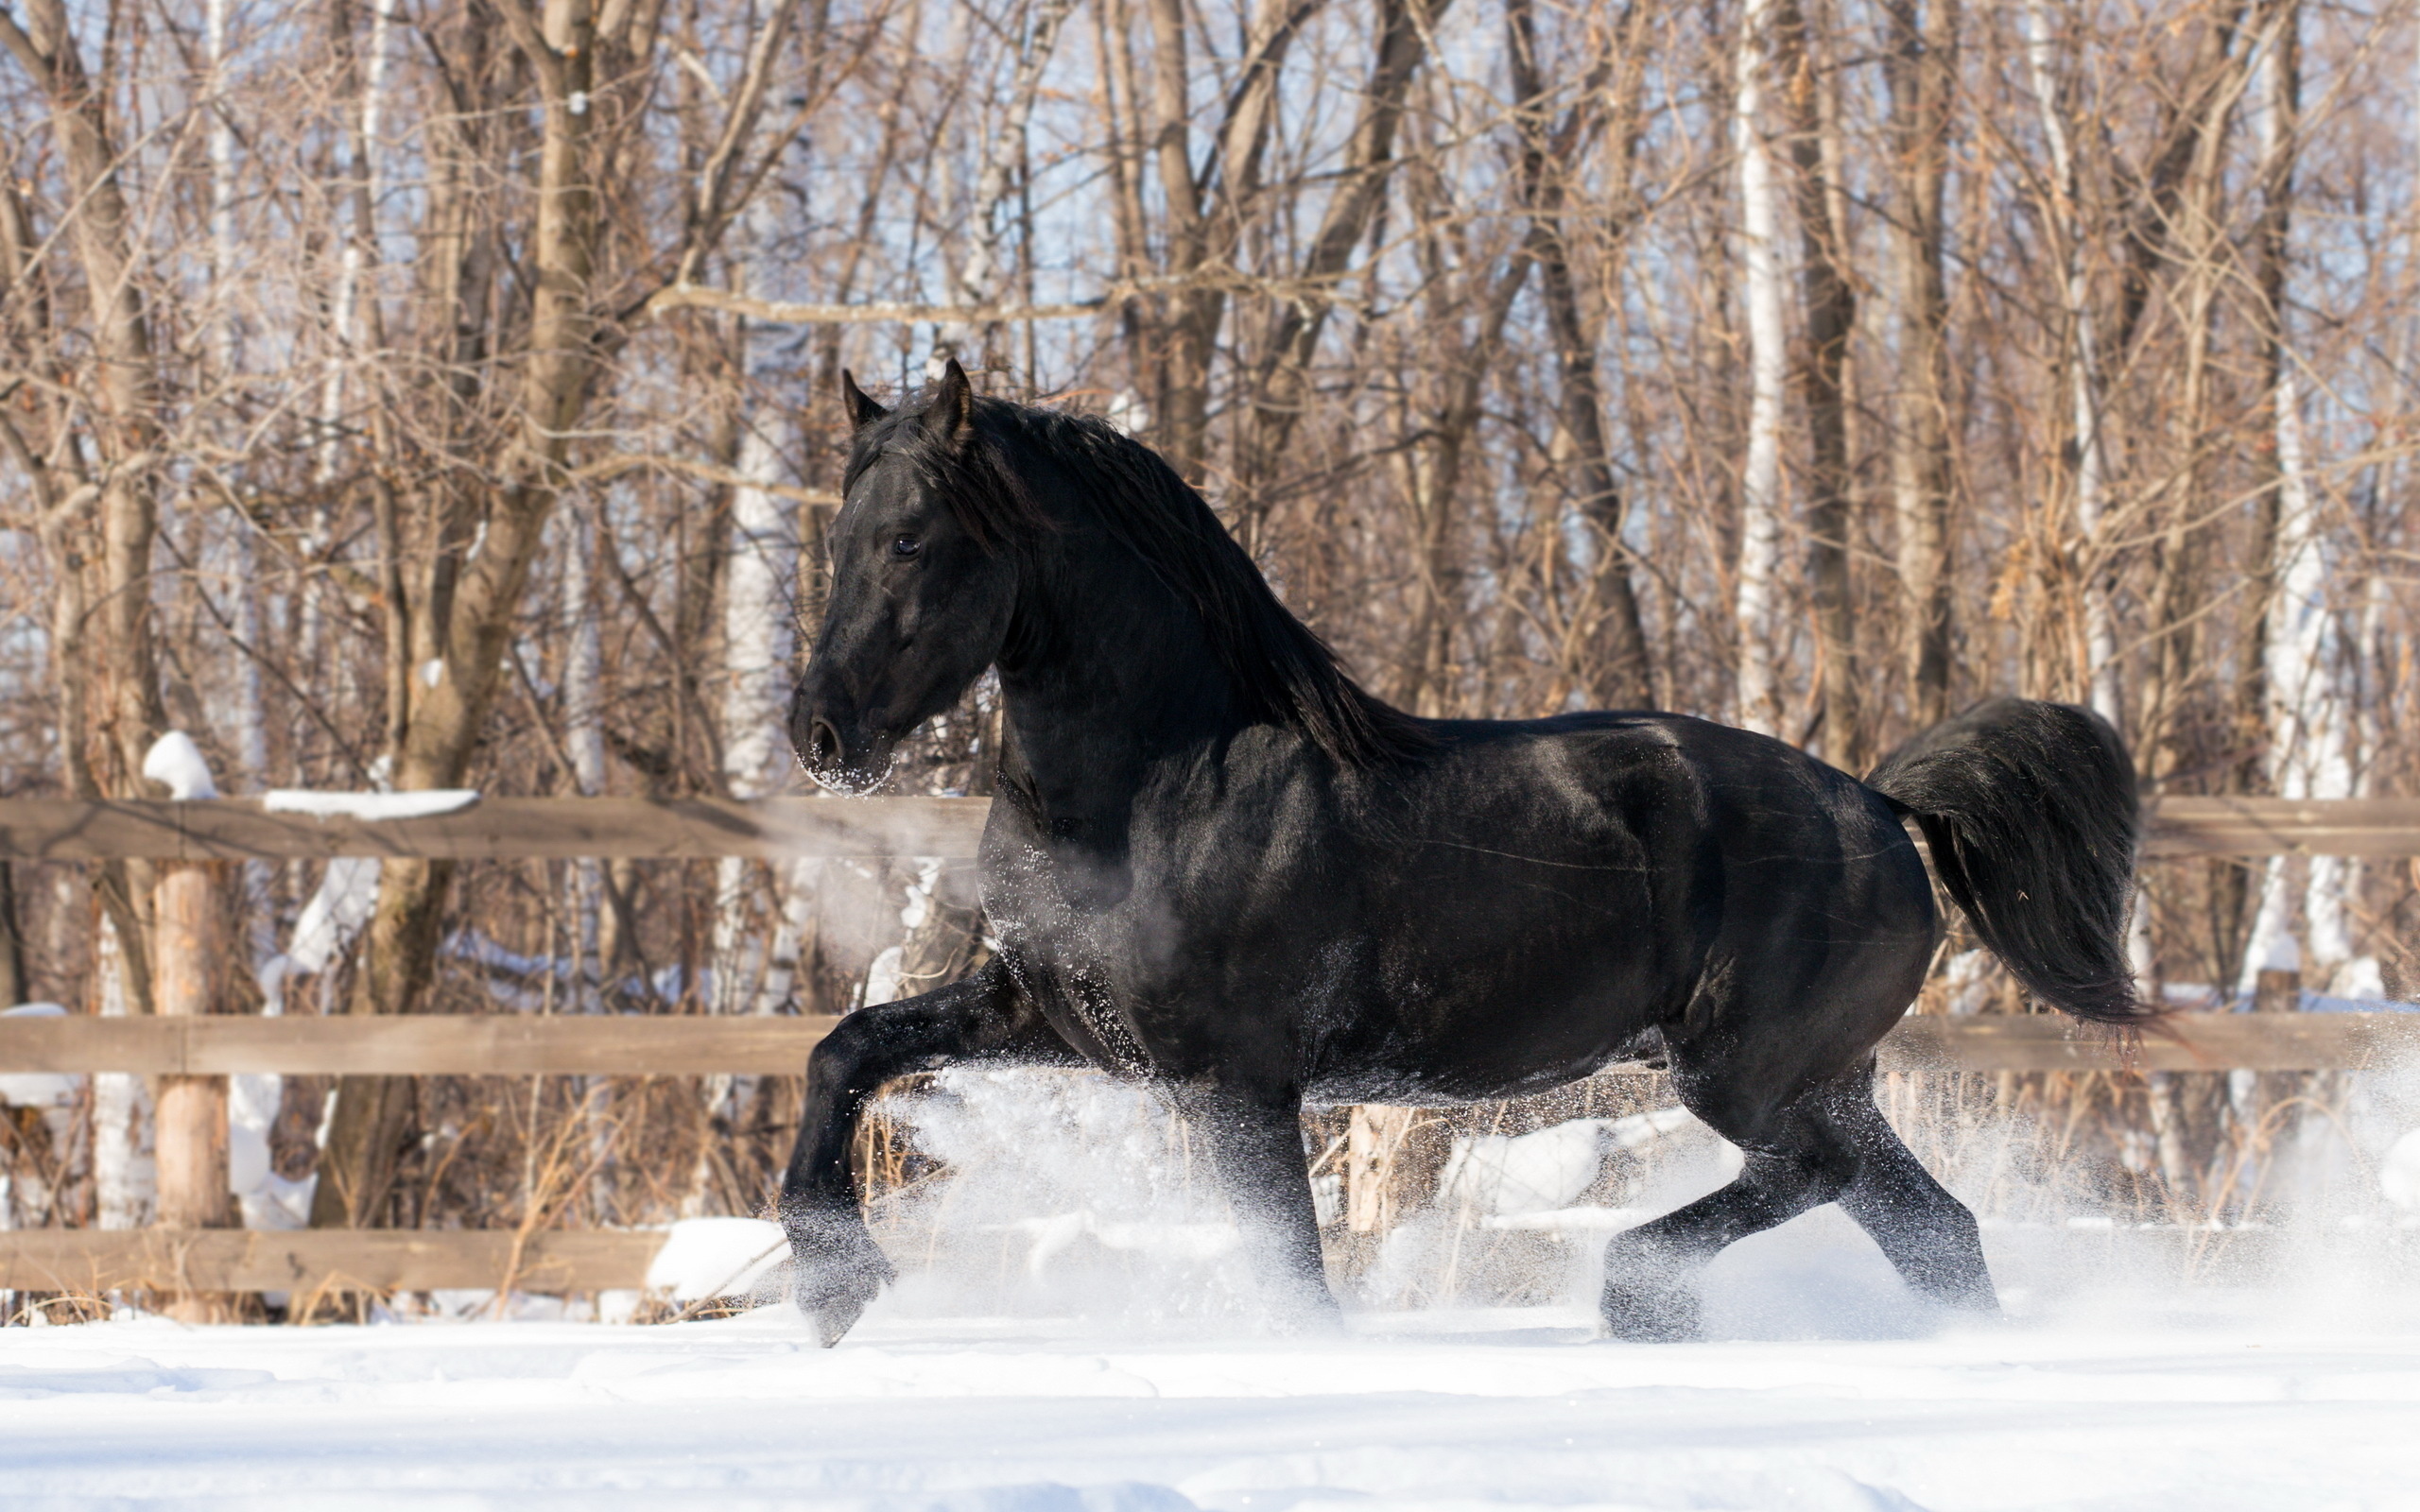 Horses in snow, Winter's grace, Majestic beauty, Serene wonder, 2560x1600 HD Desktop